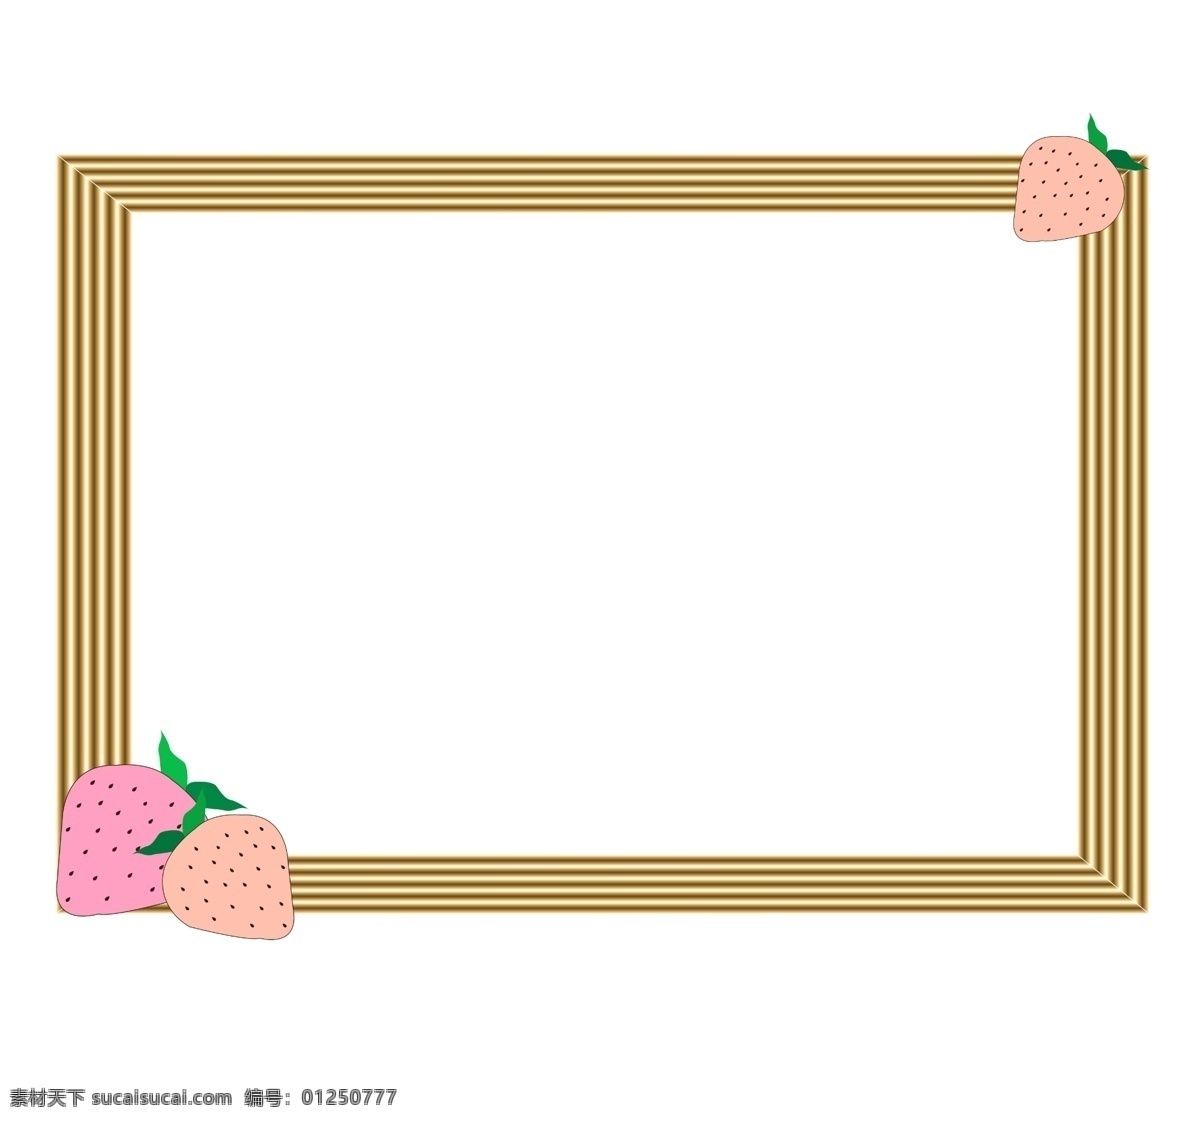 卡通 草莓 食品 边框 插画 粉色草莓 红色草莓 甜食 美味 长方形相框 花纹相框 黑点草莓 甜甜的草莓 酸酸的草莓